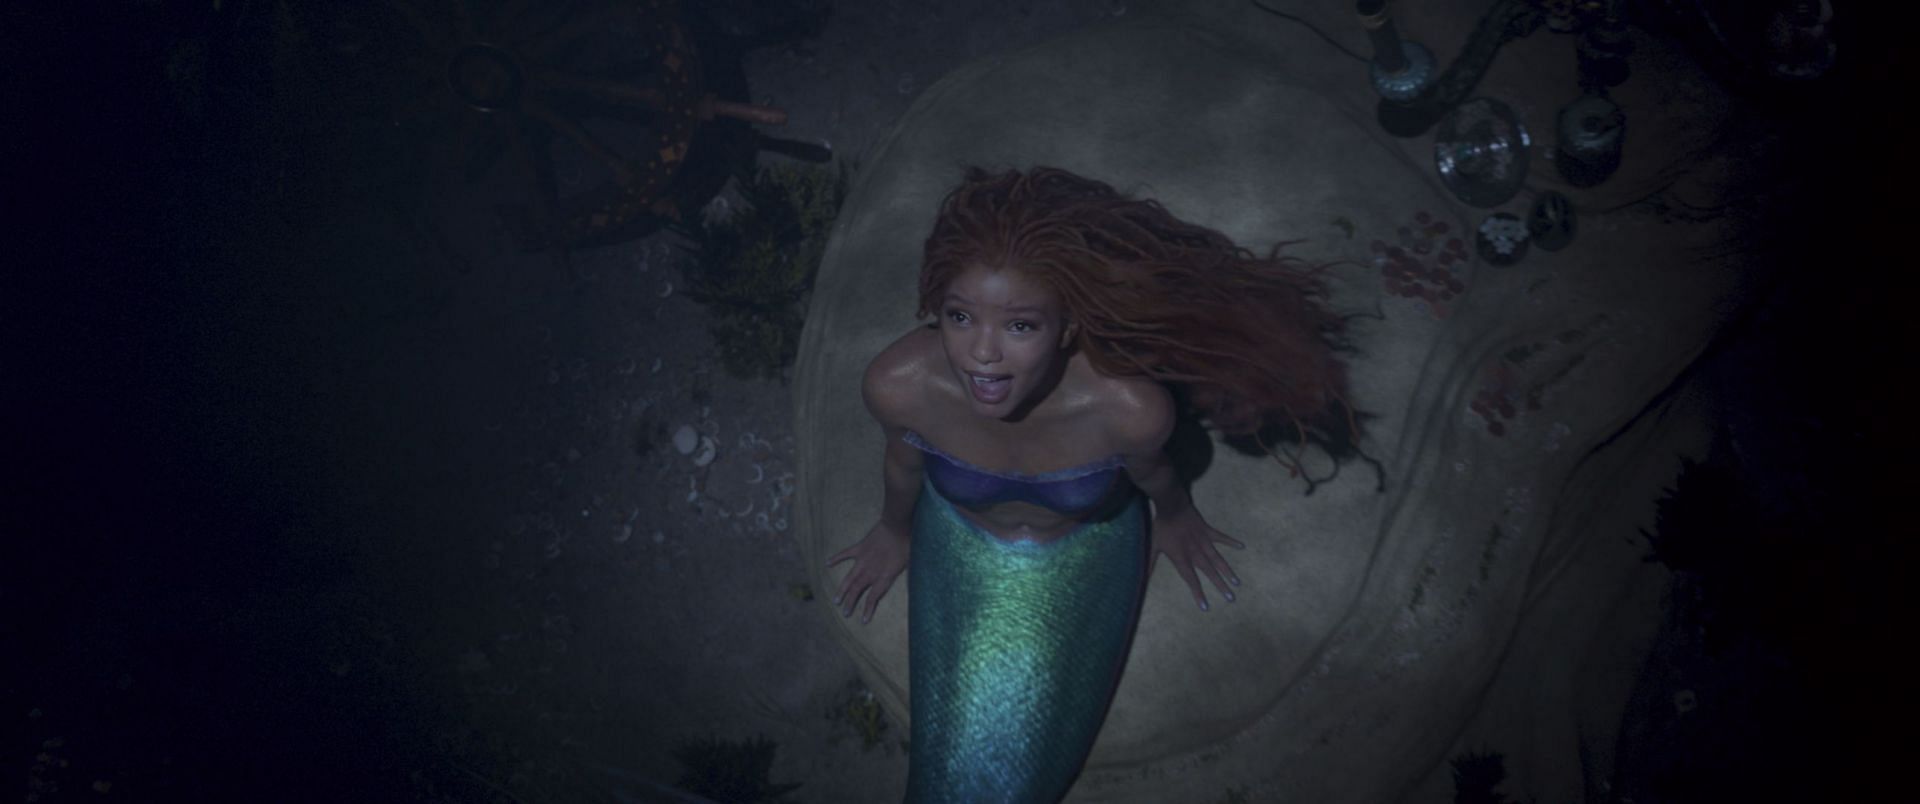 The Little Mermaid (Image via IMDb)